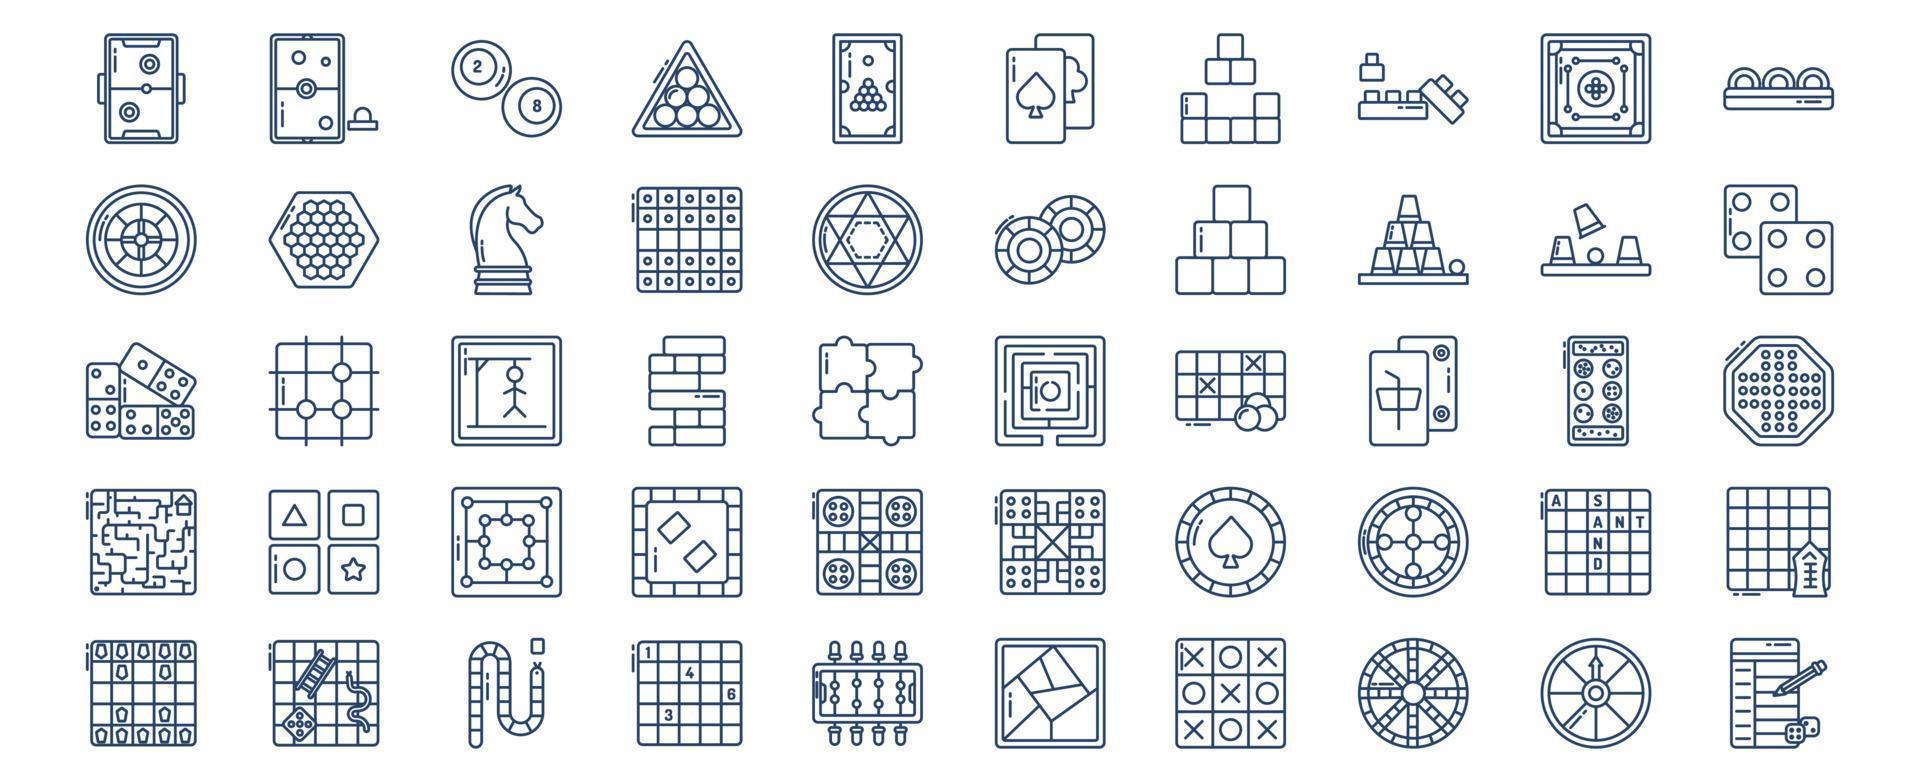 verzameling van pictogrammen verwant naar tafel spellen, inclusief pictogrammen Leuk vinden lucht hoer, schaken, casino chips, en meer. vector illustraties, pixel perfect reeks